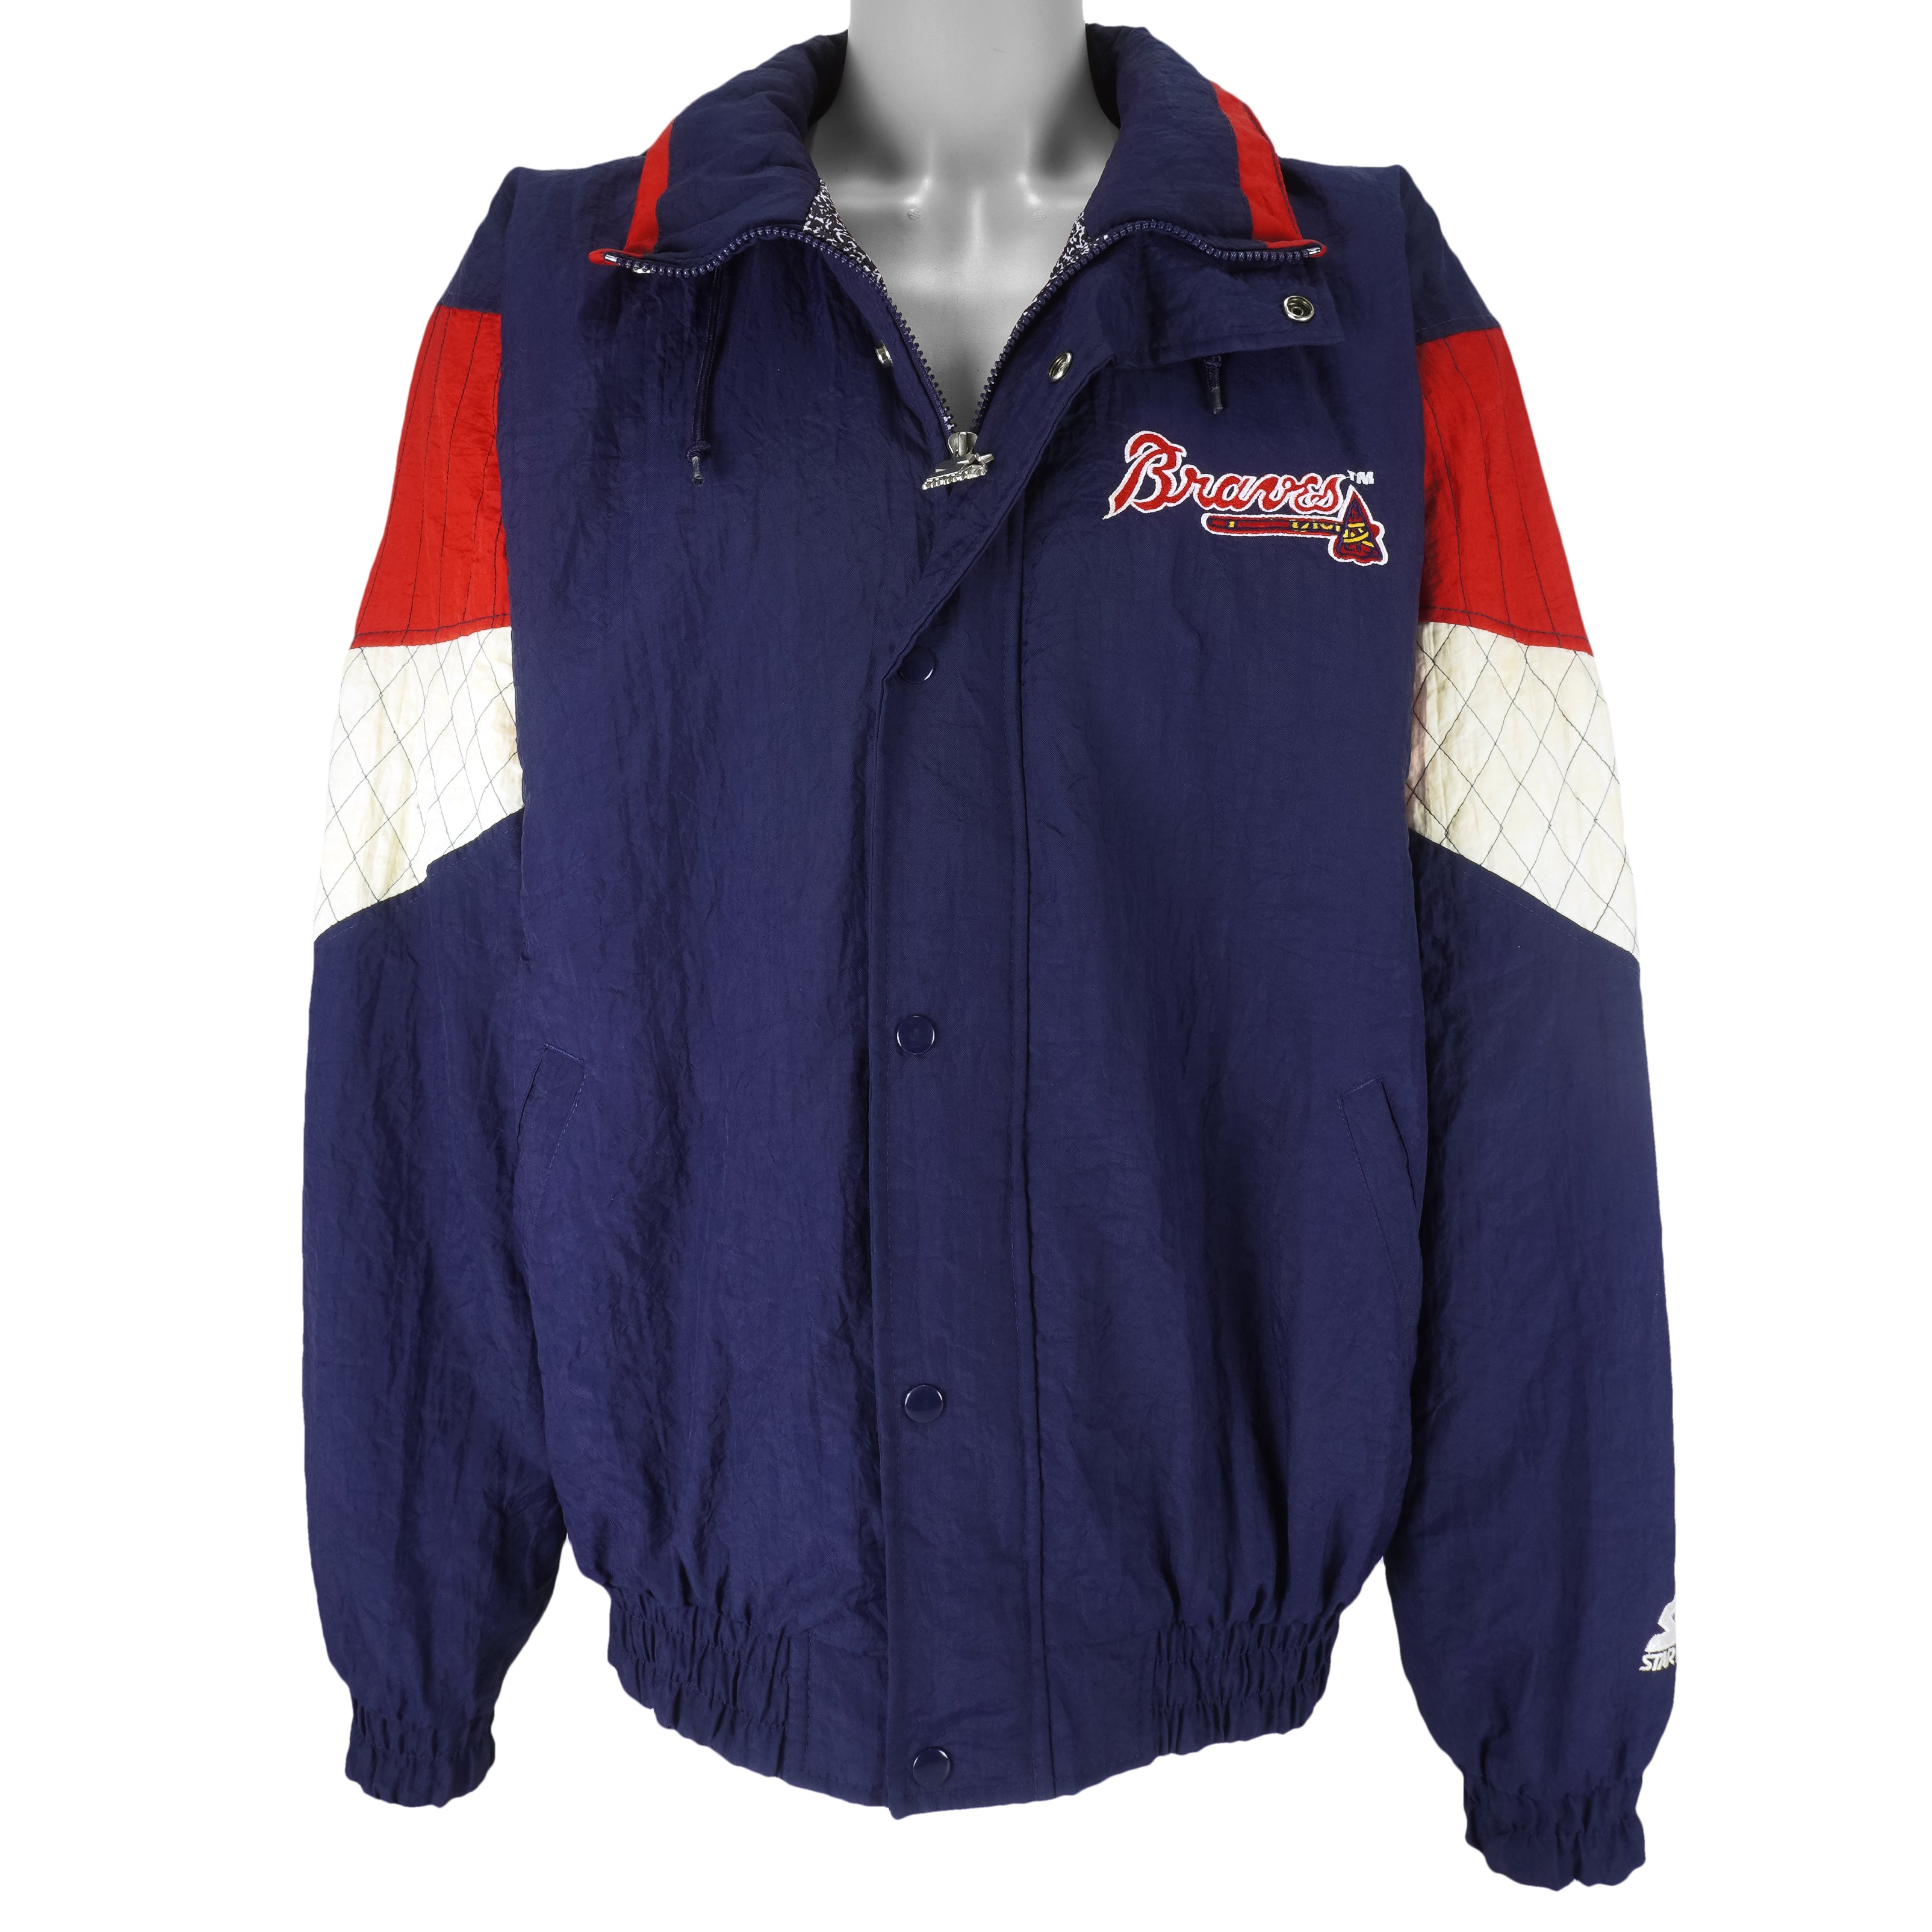 Vintage Starter - Atlanta Braves Hooded Warm Jacket 1990s Large